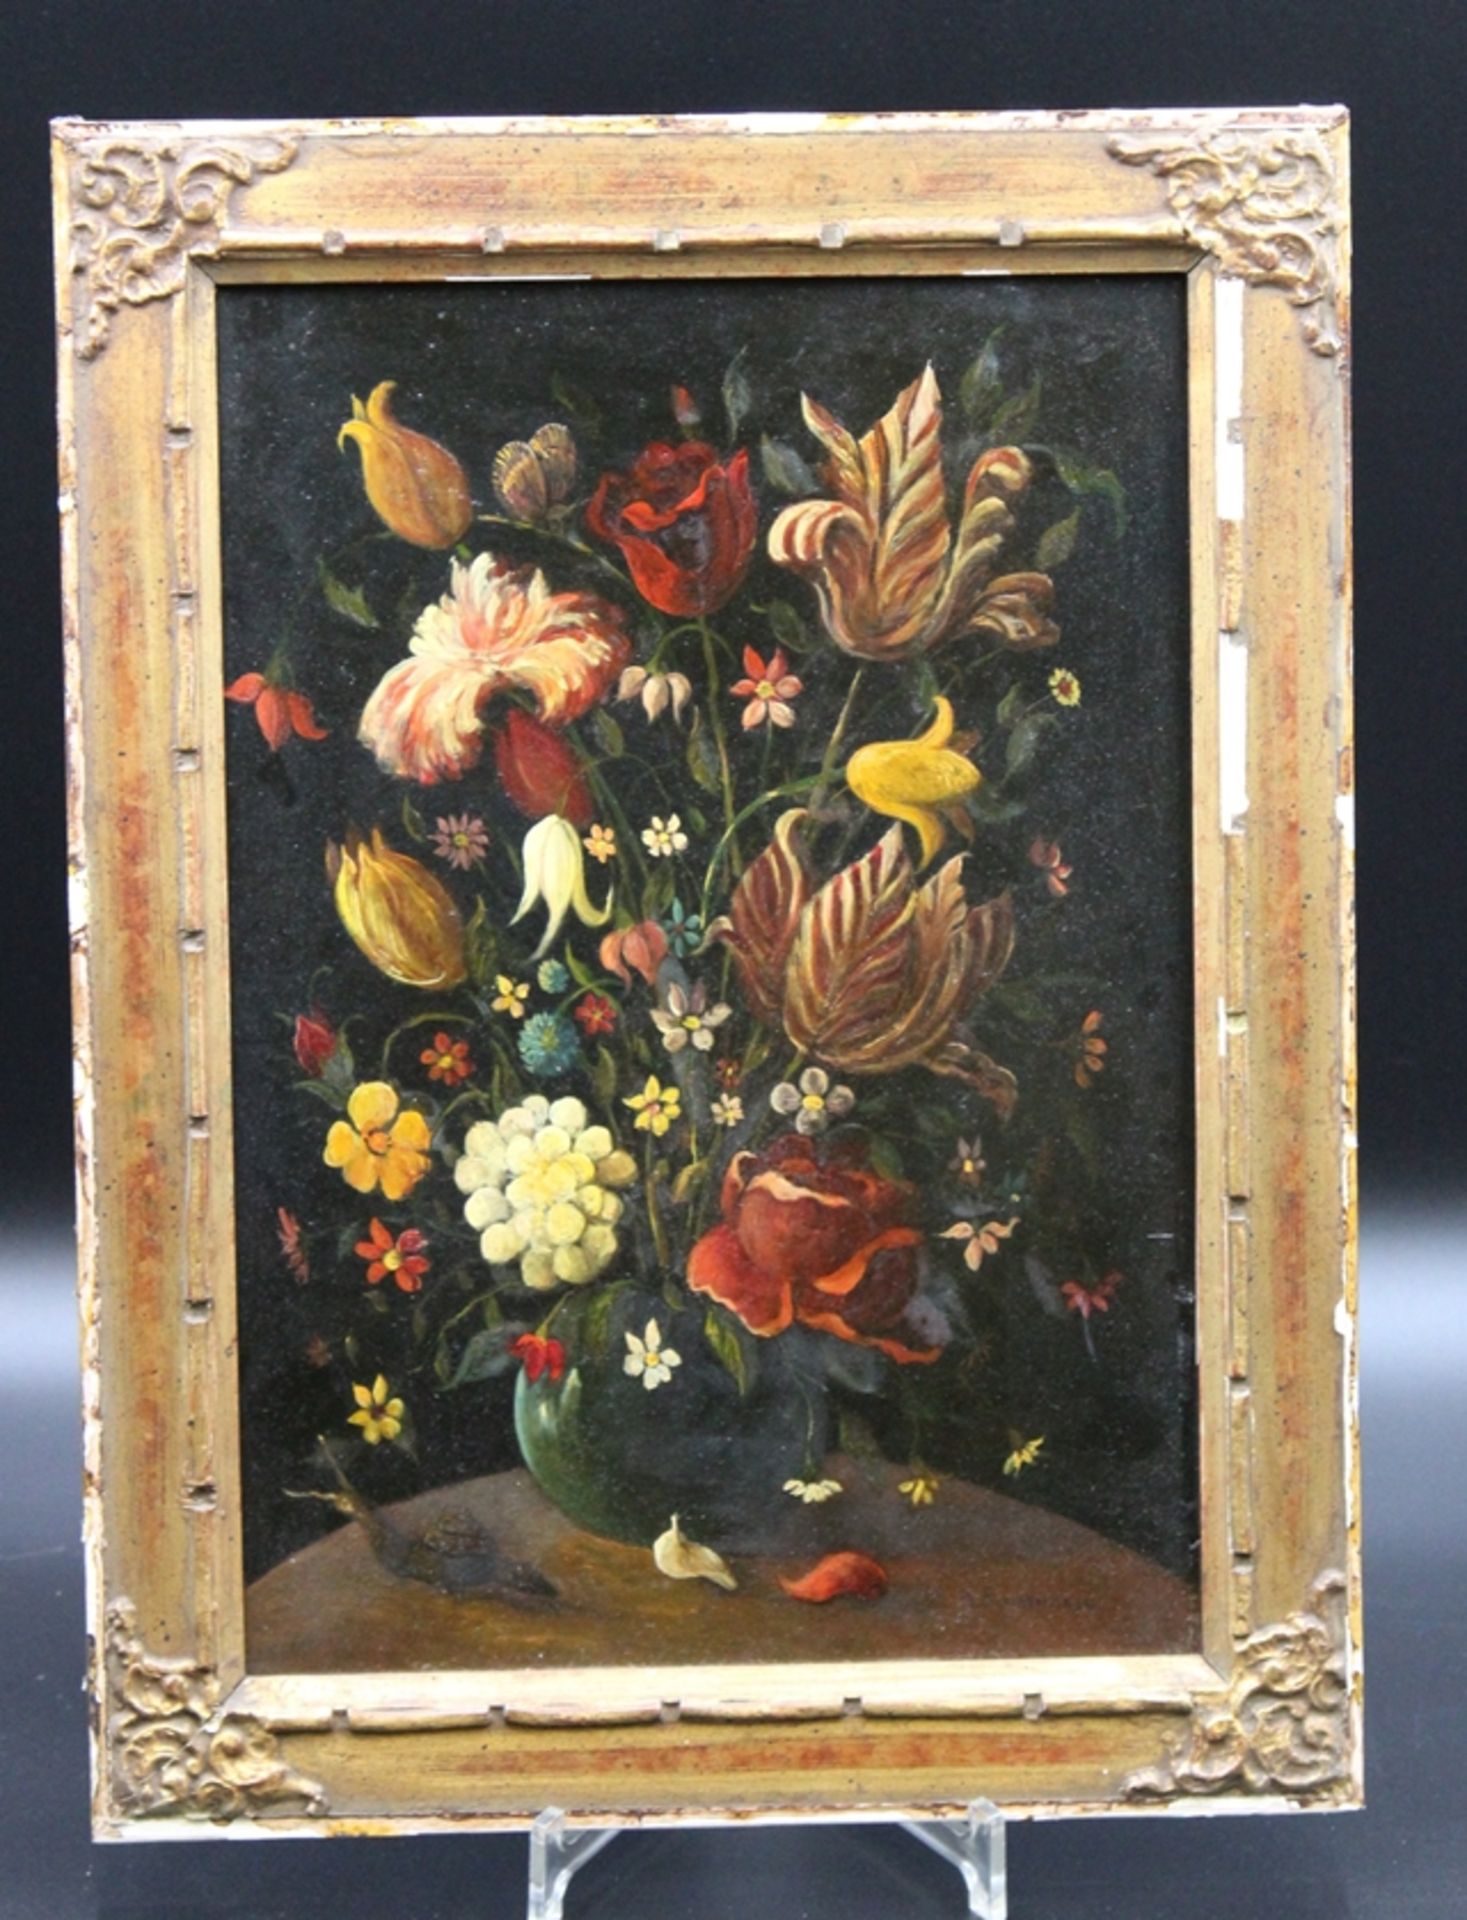 Holländische Schule, Anhänger von Ambrosius Bosschaert, 17. Jhd., Blumen in Vase, Apokryph unten re - Bild 2 aus 5